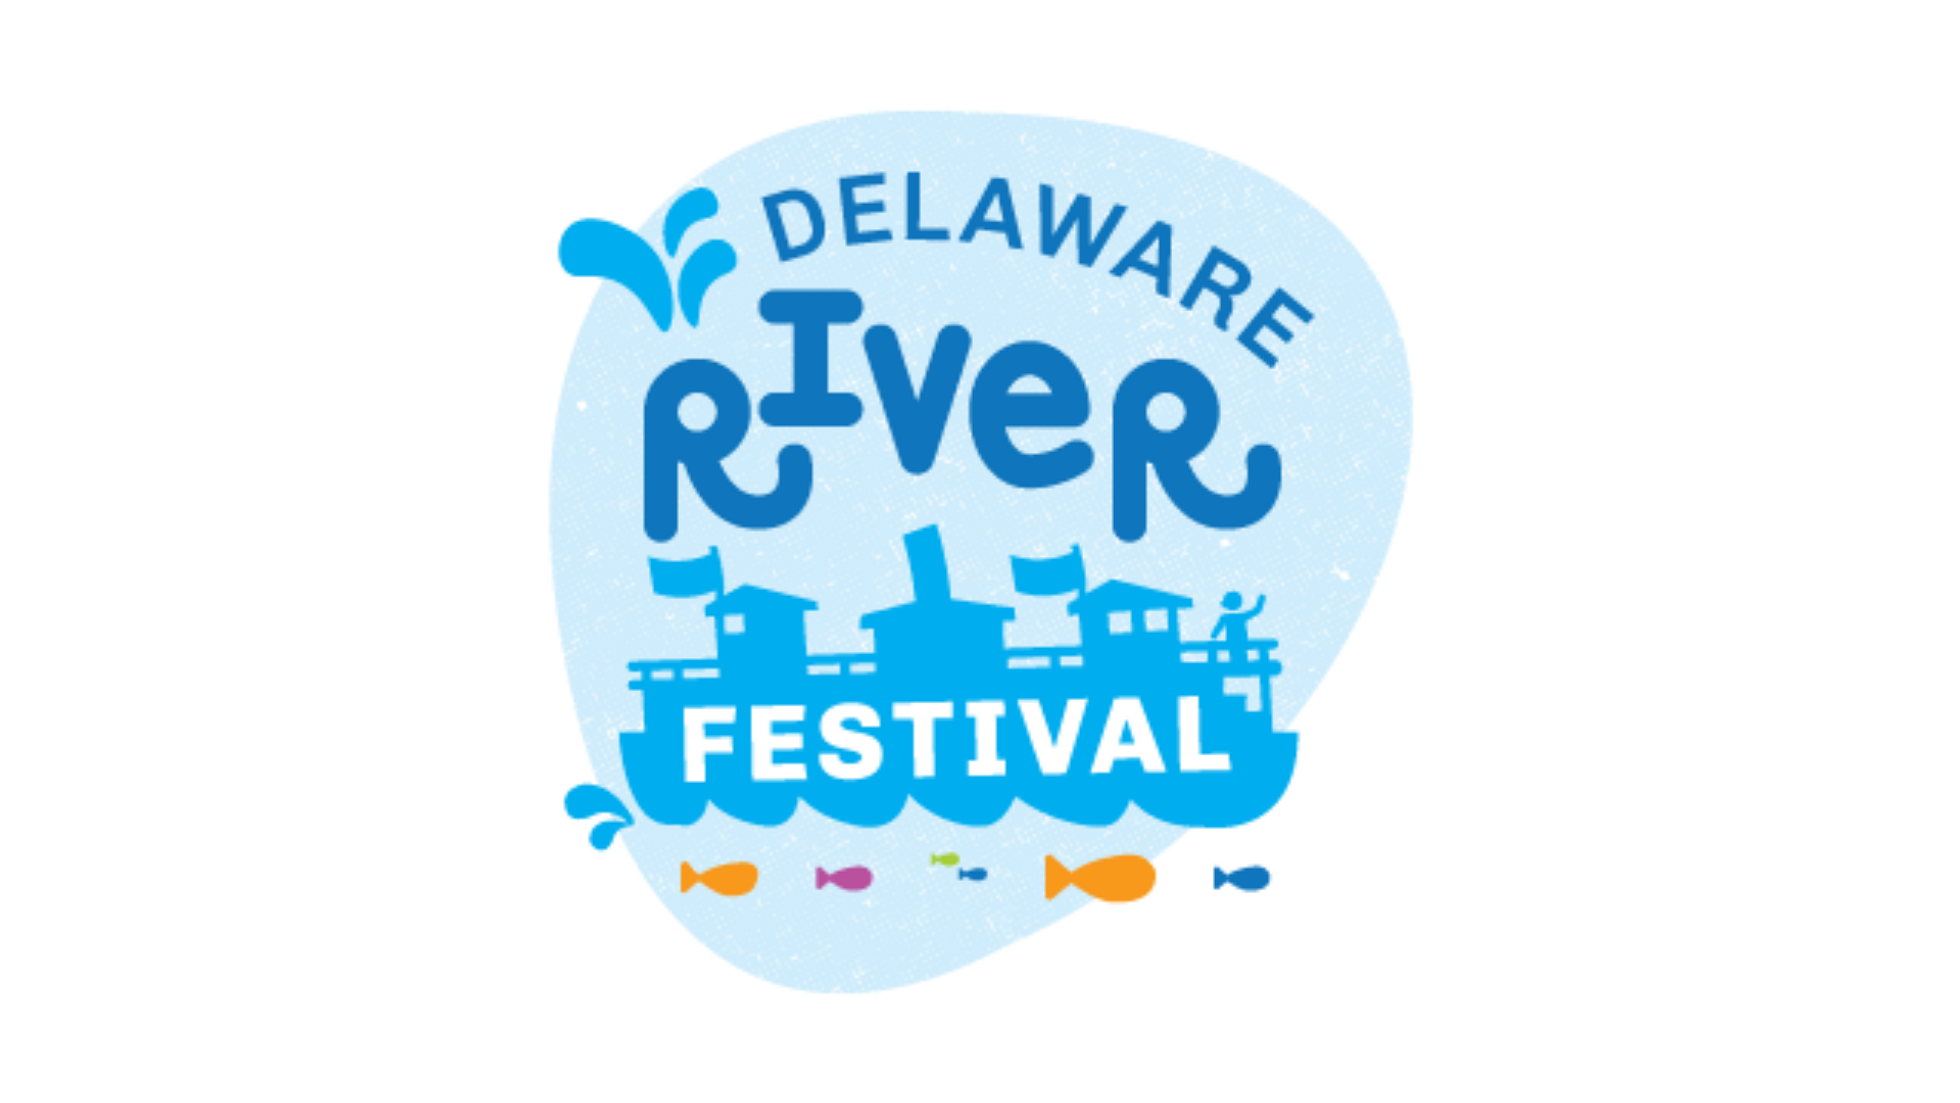 2021 Delaware River Festival